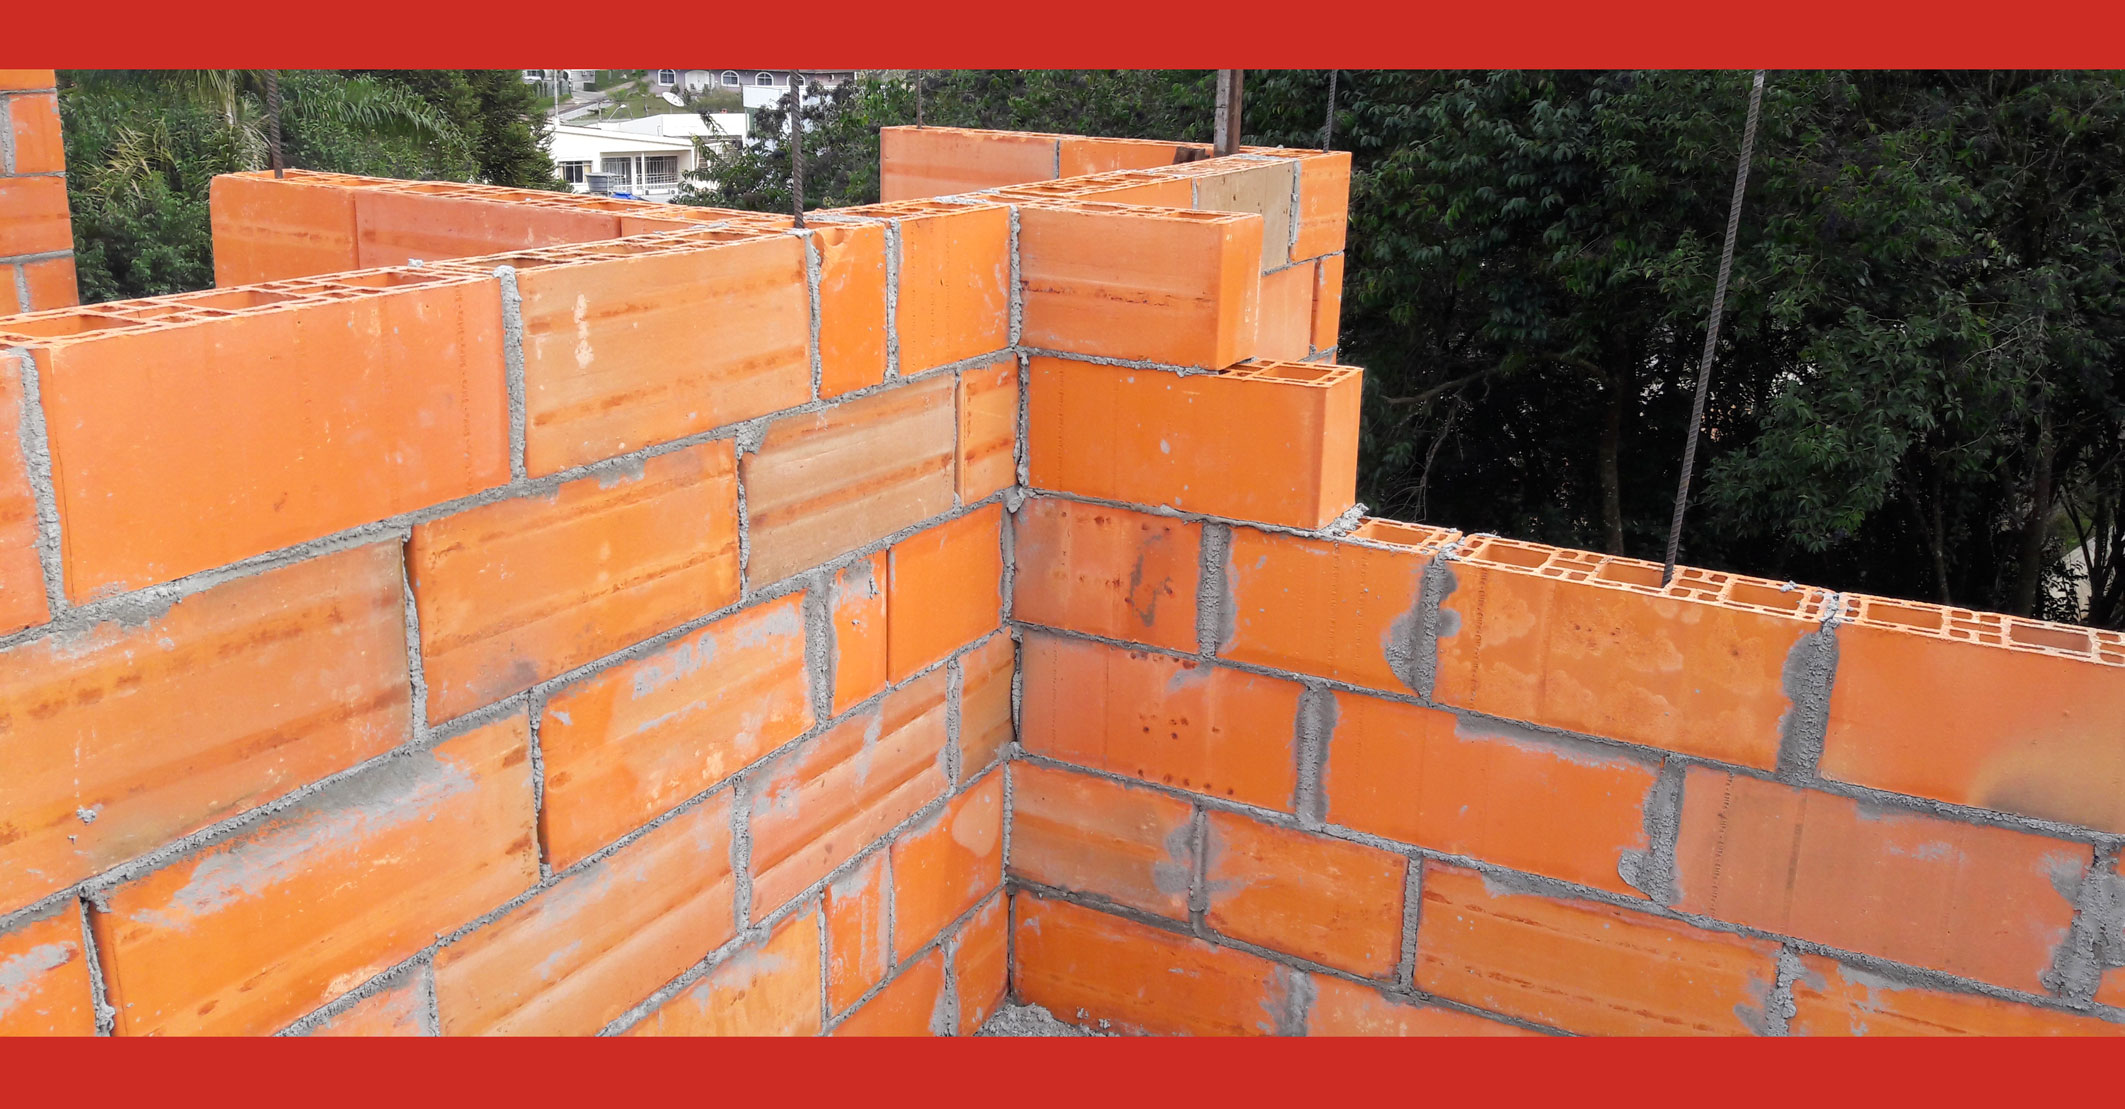 Construção de blocos e vigas de concreto com mão de obra especializada